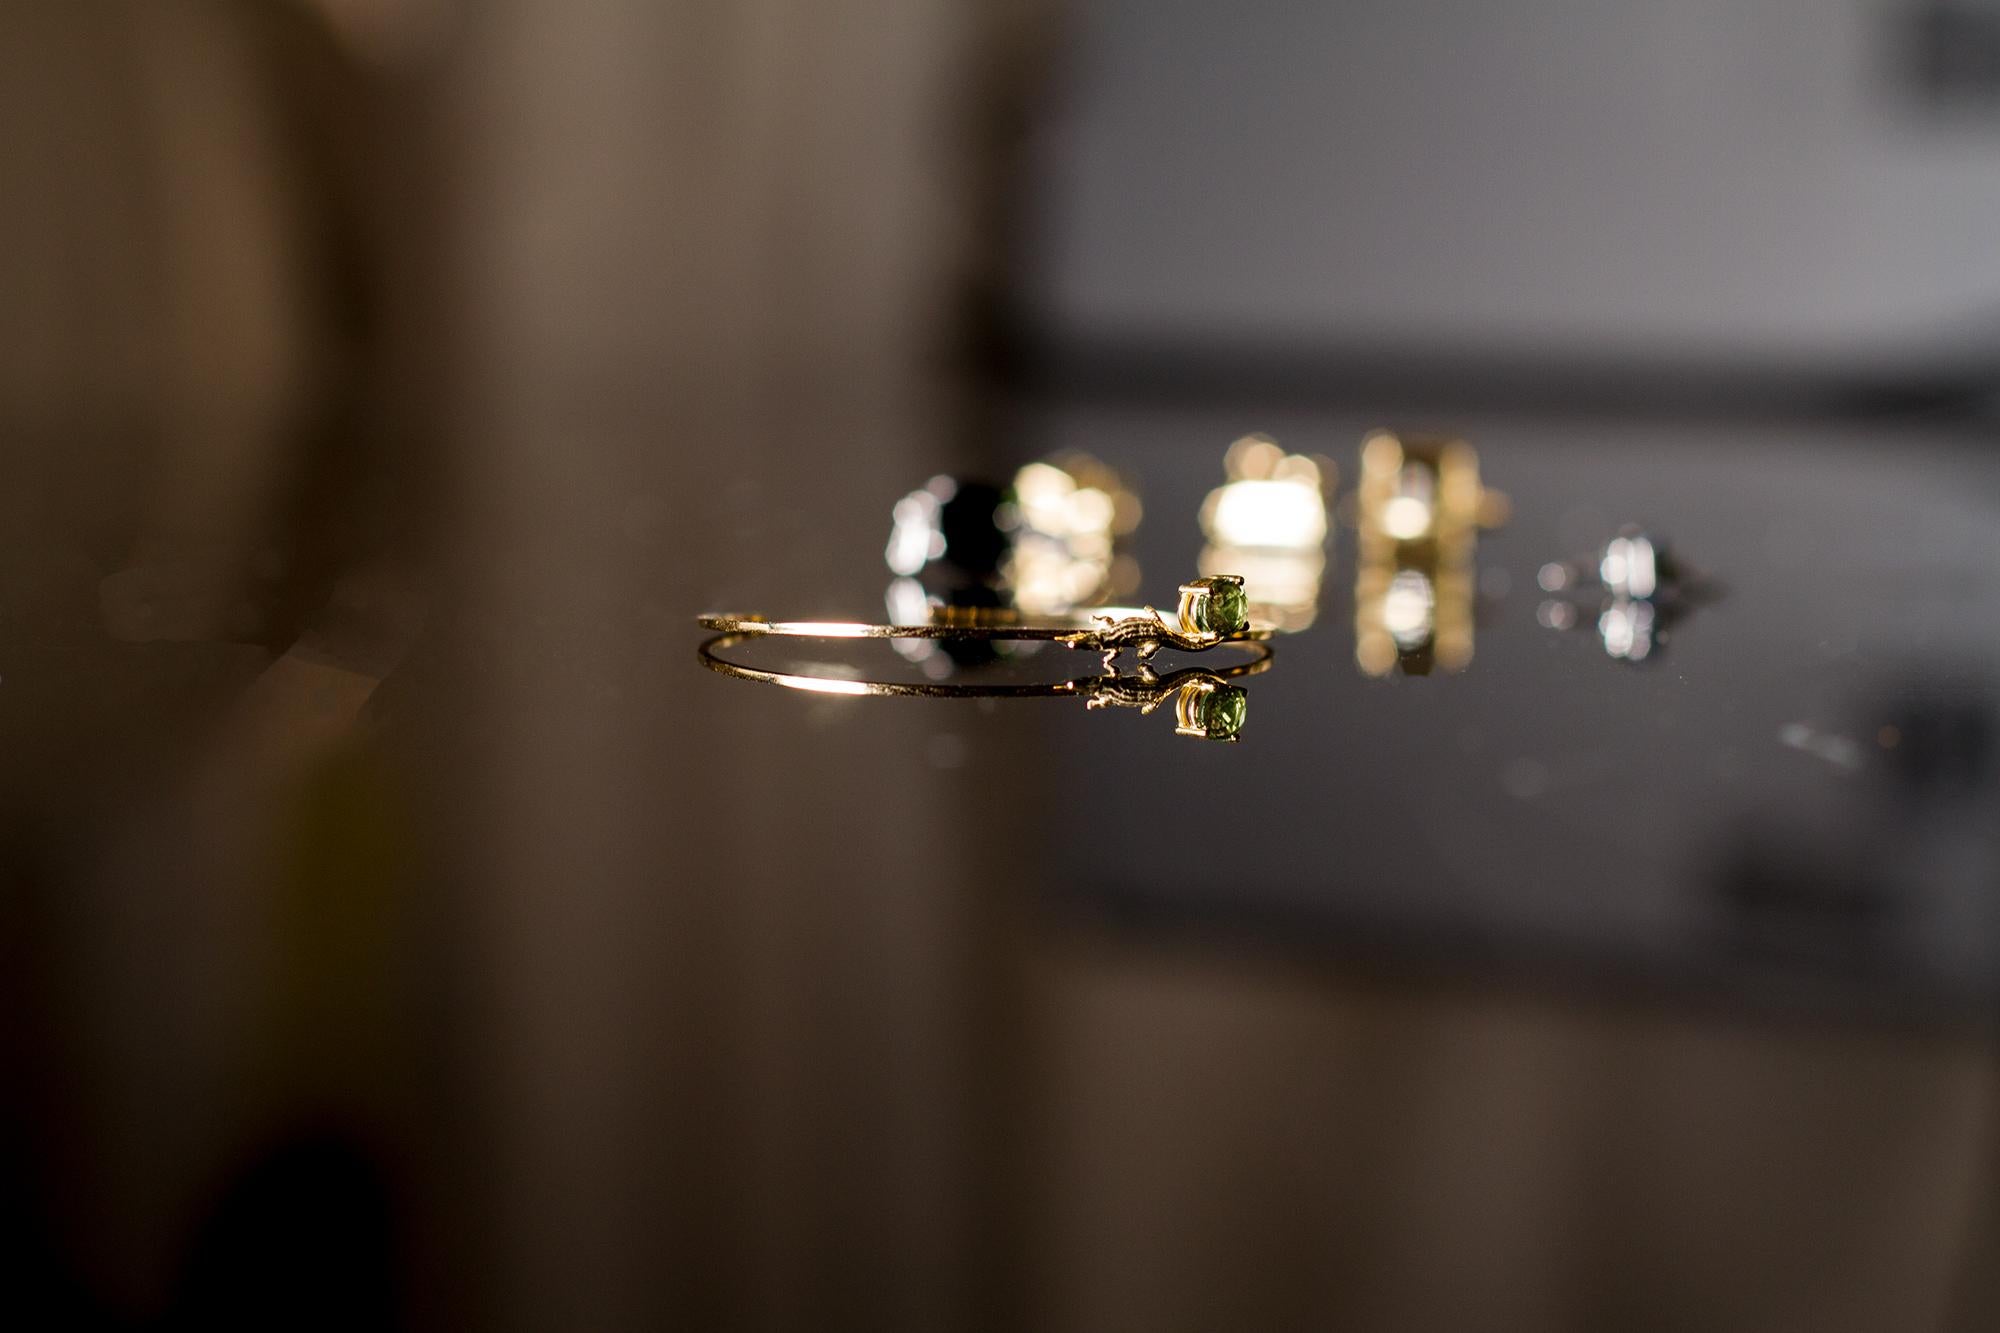 Ce bracelet mésopotamien contemporain en or rose 18 carats est incrusté de saphir vert ovale.

Vous pouvez commander cette pièce en or blanc, rose ou jaune, avec spinelle, saphir, grenat rhodolite, émeraude, tourmaline Paraiba, tanzanite ou les